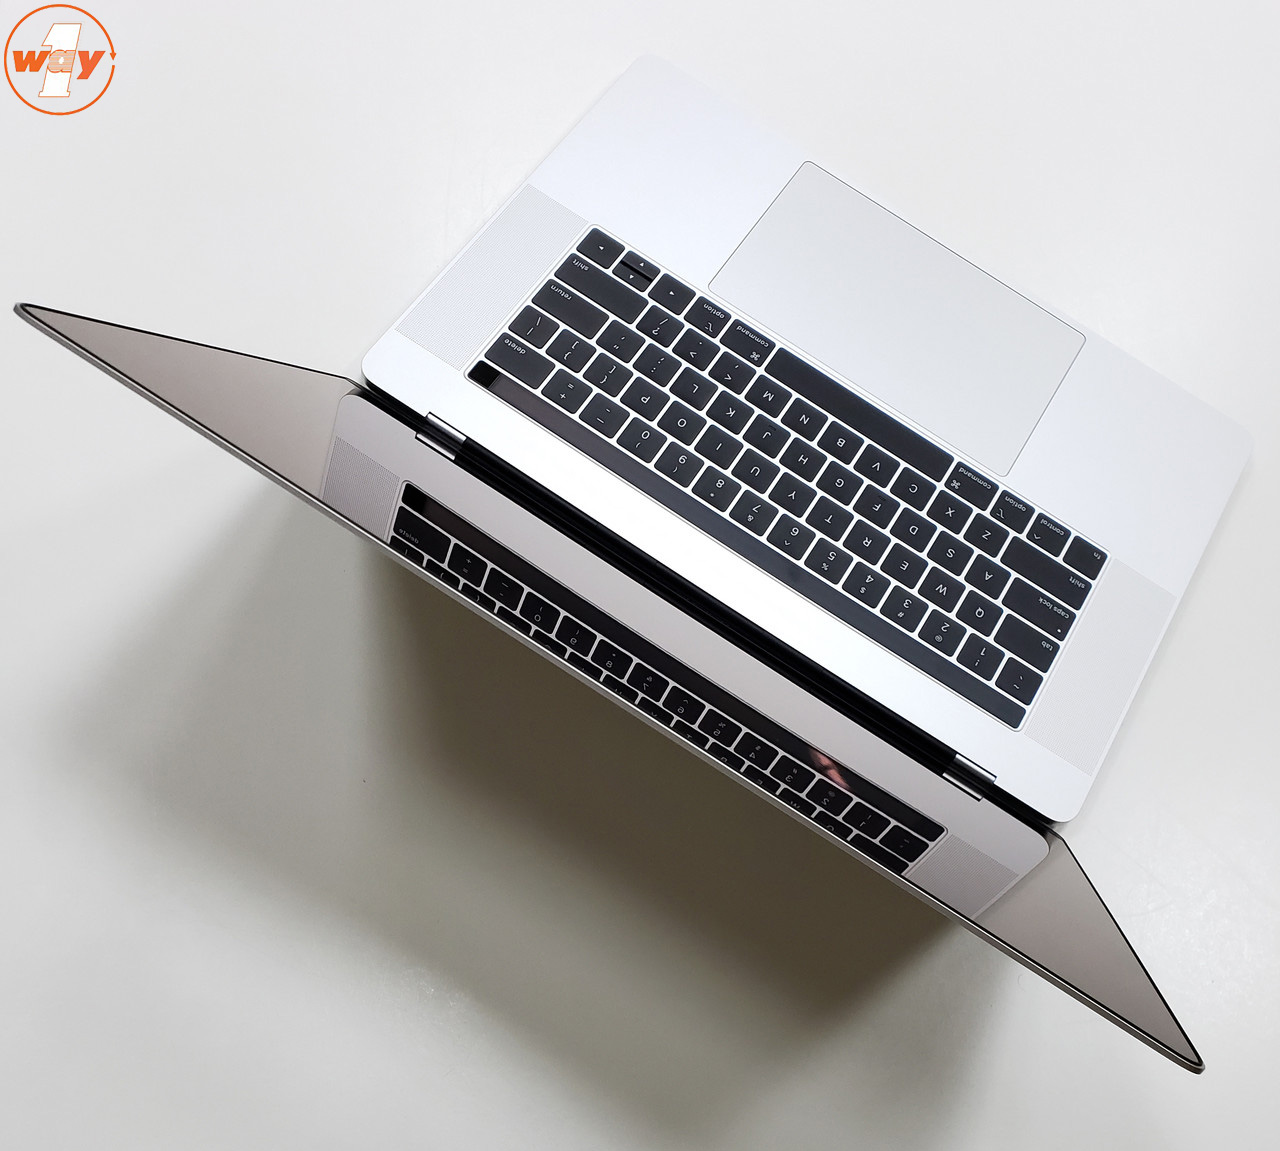 MacBook Pro 2019 MV922 có thiết kế rắn chắc, bền bỉ